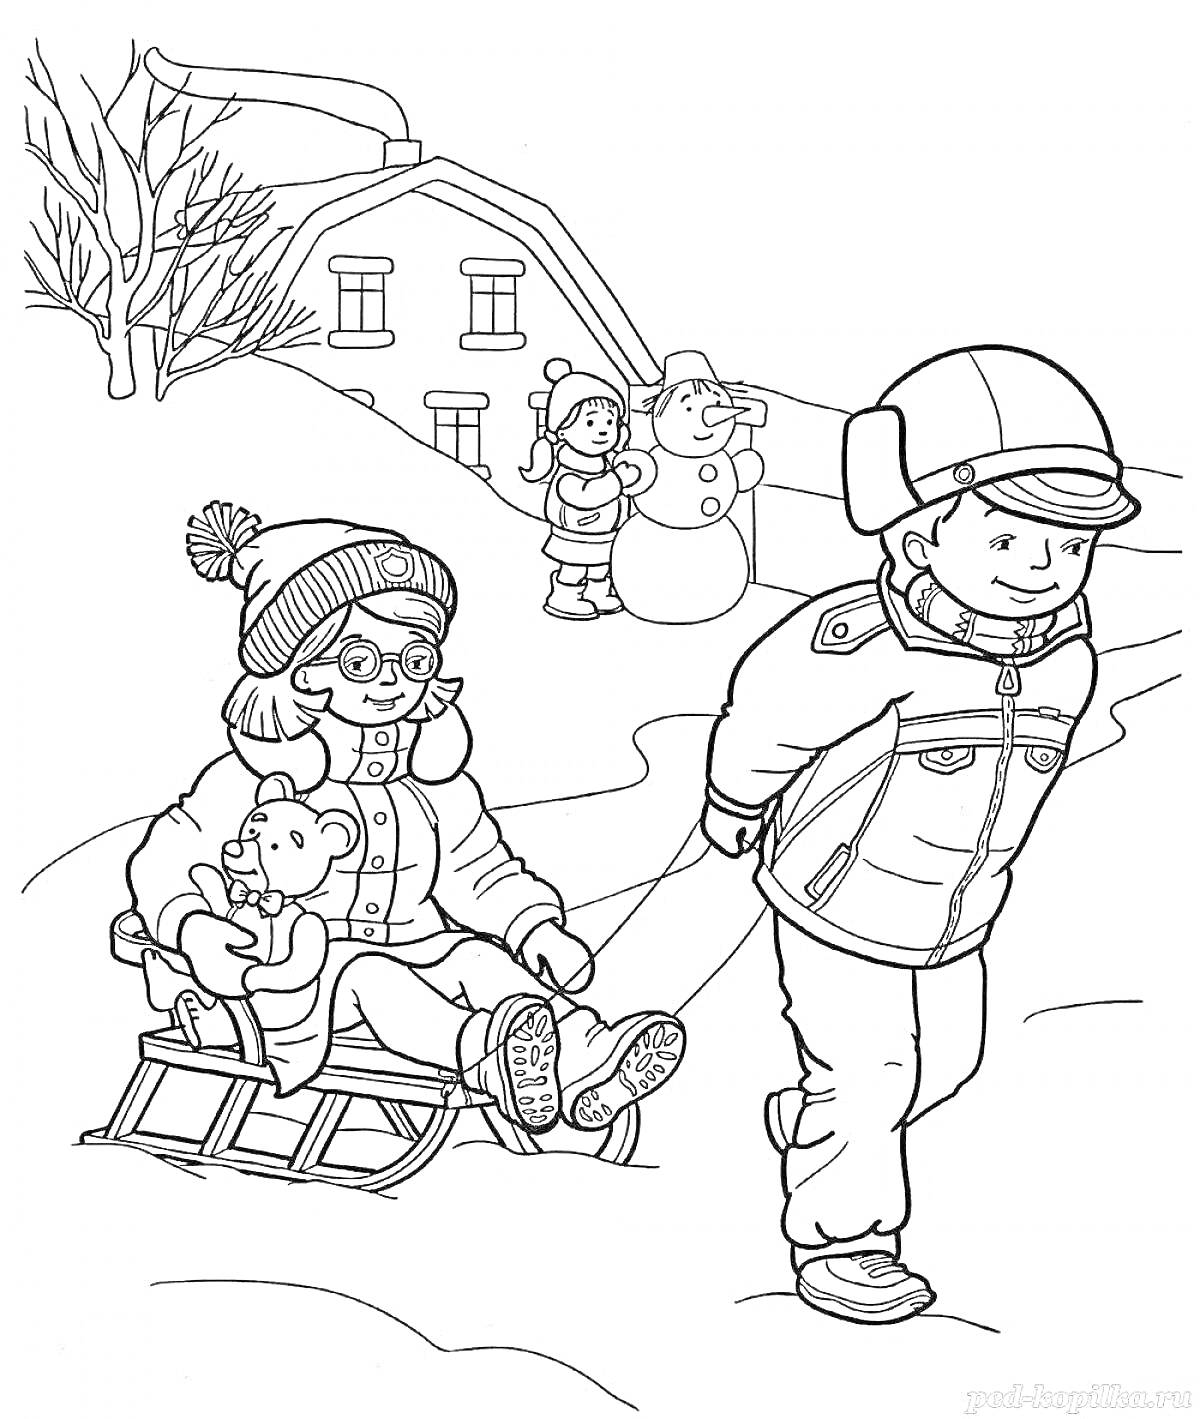 Раскраска Дети зимой: мальчик тянет на санках девочку с игрушкой, на заднем плане два ребенка лепят снеговика, дом и дерево